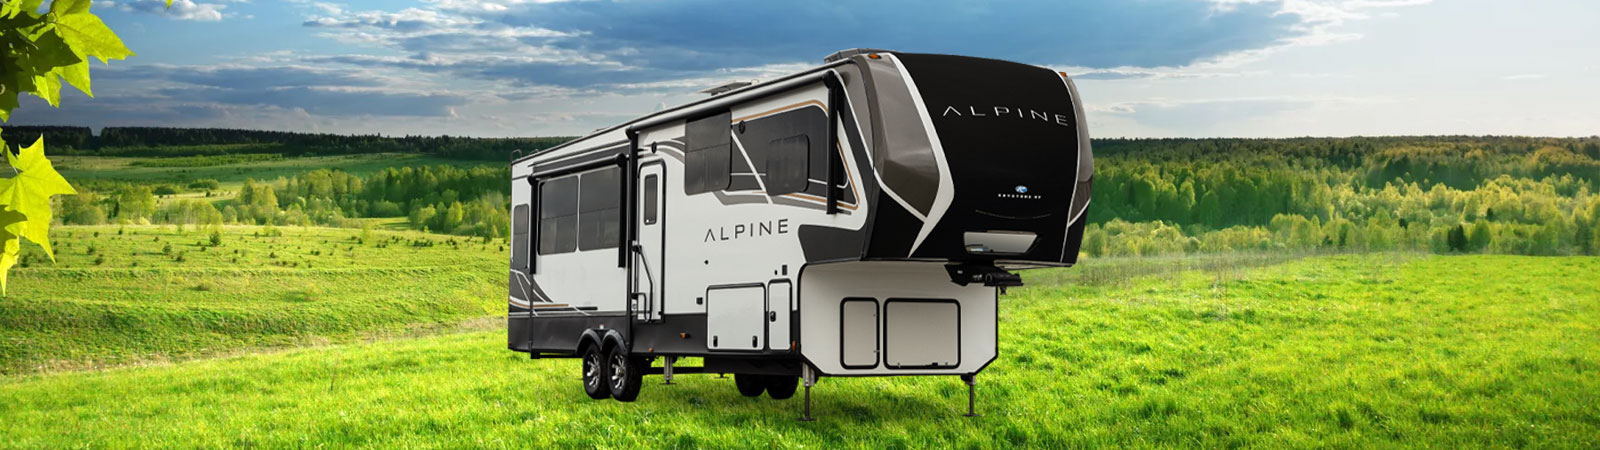 New Keystone RV Alpine Fifth Wheel for Sale in Beloit Kansas USA